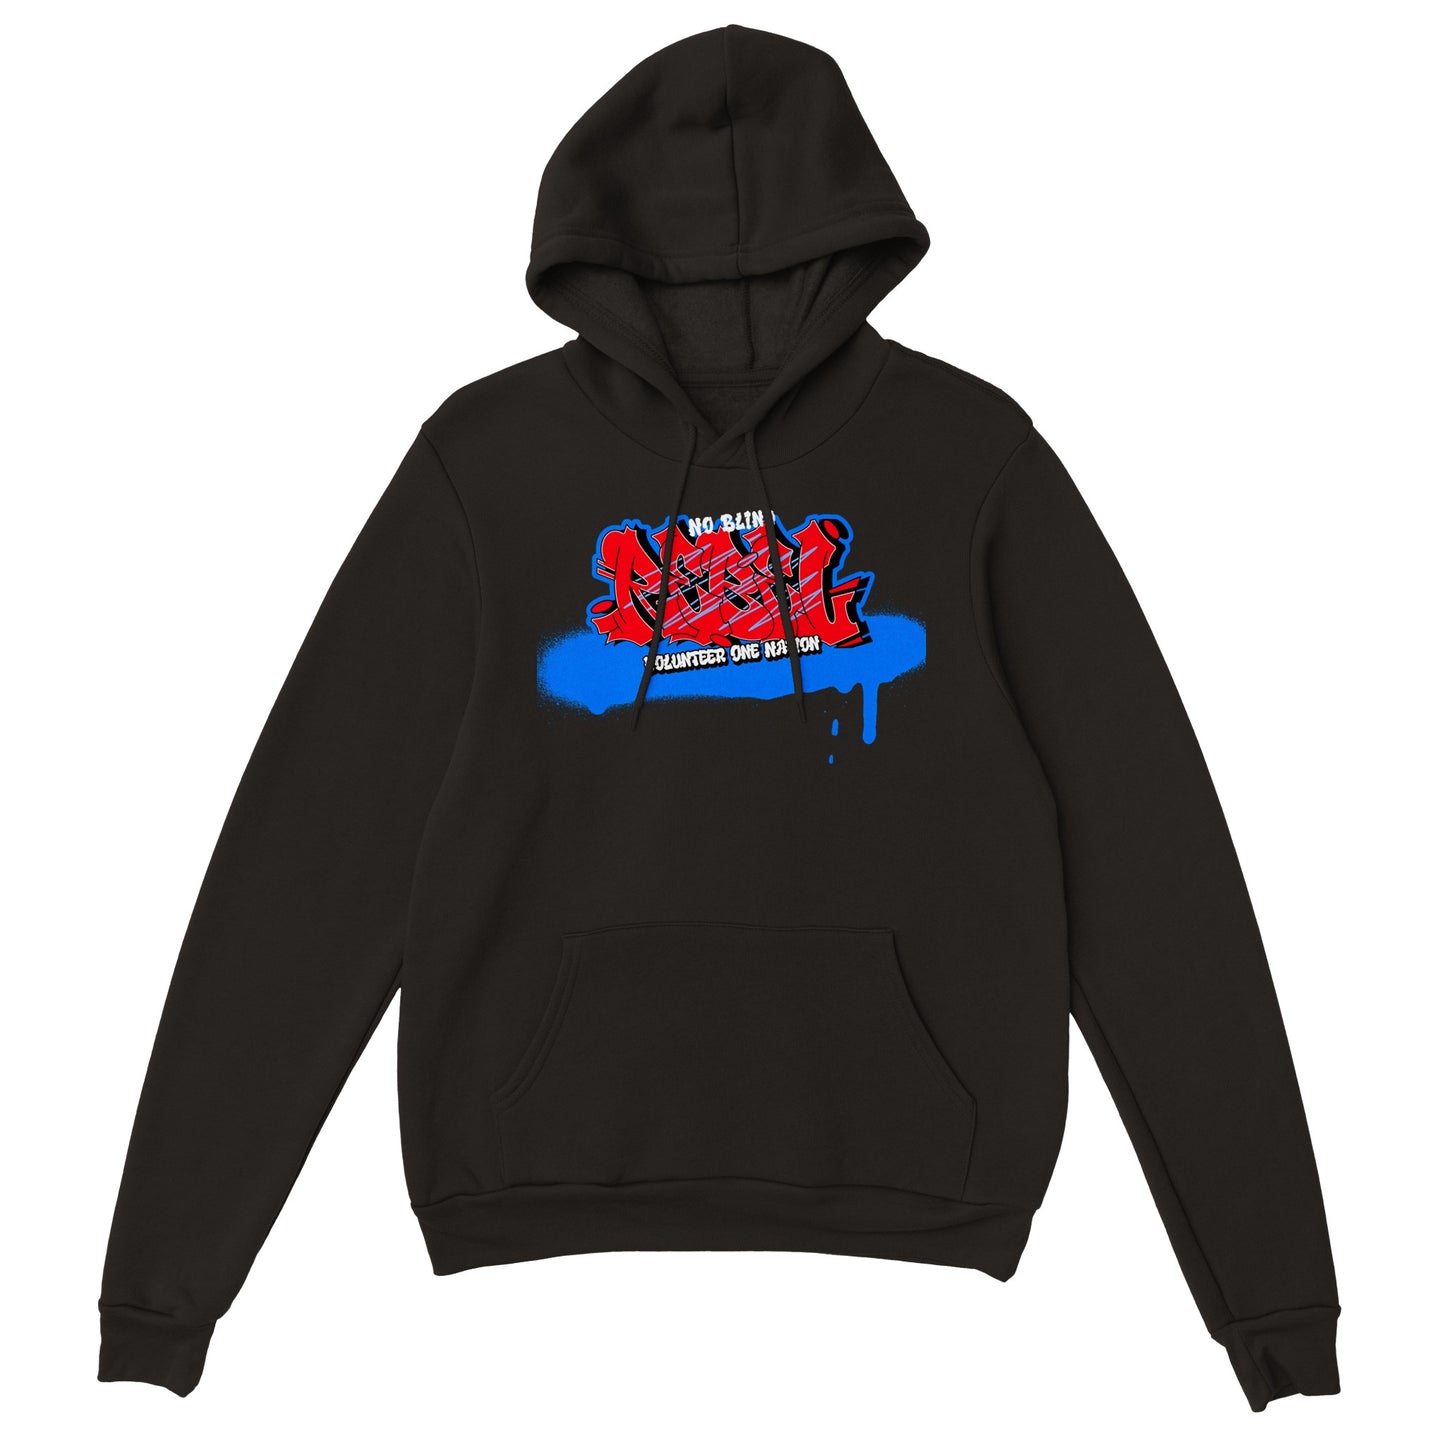 Streetwear clothing  hoodie dress hood street